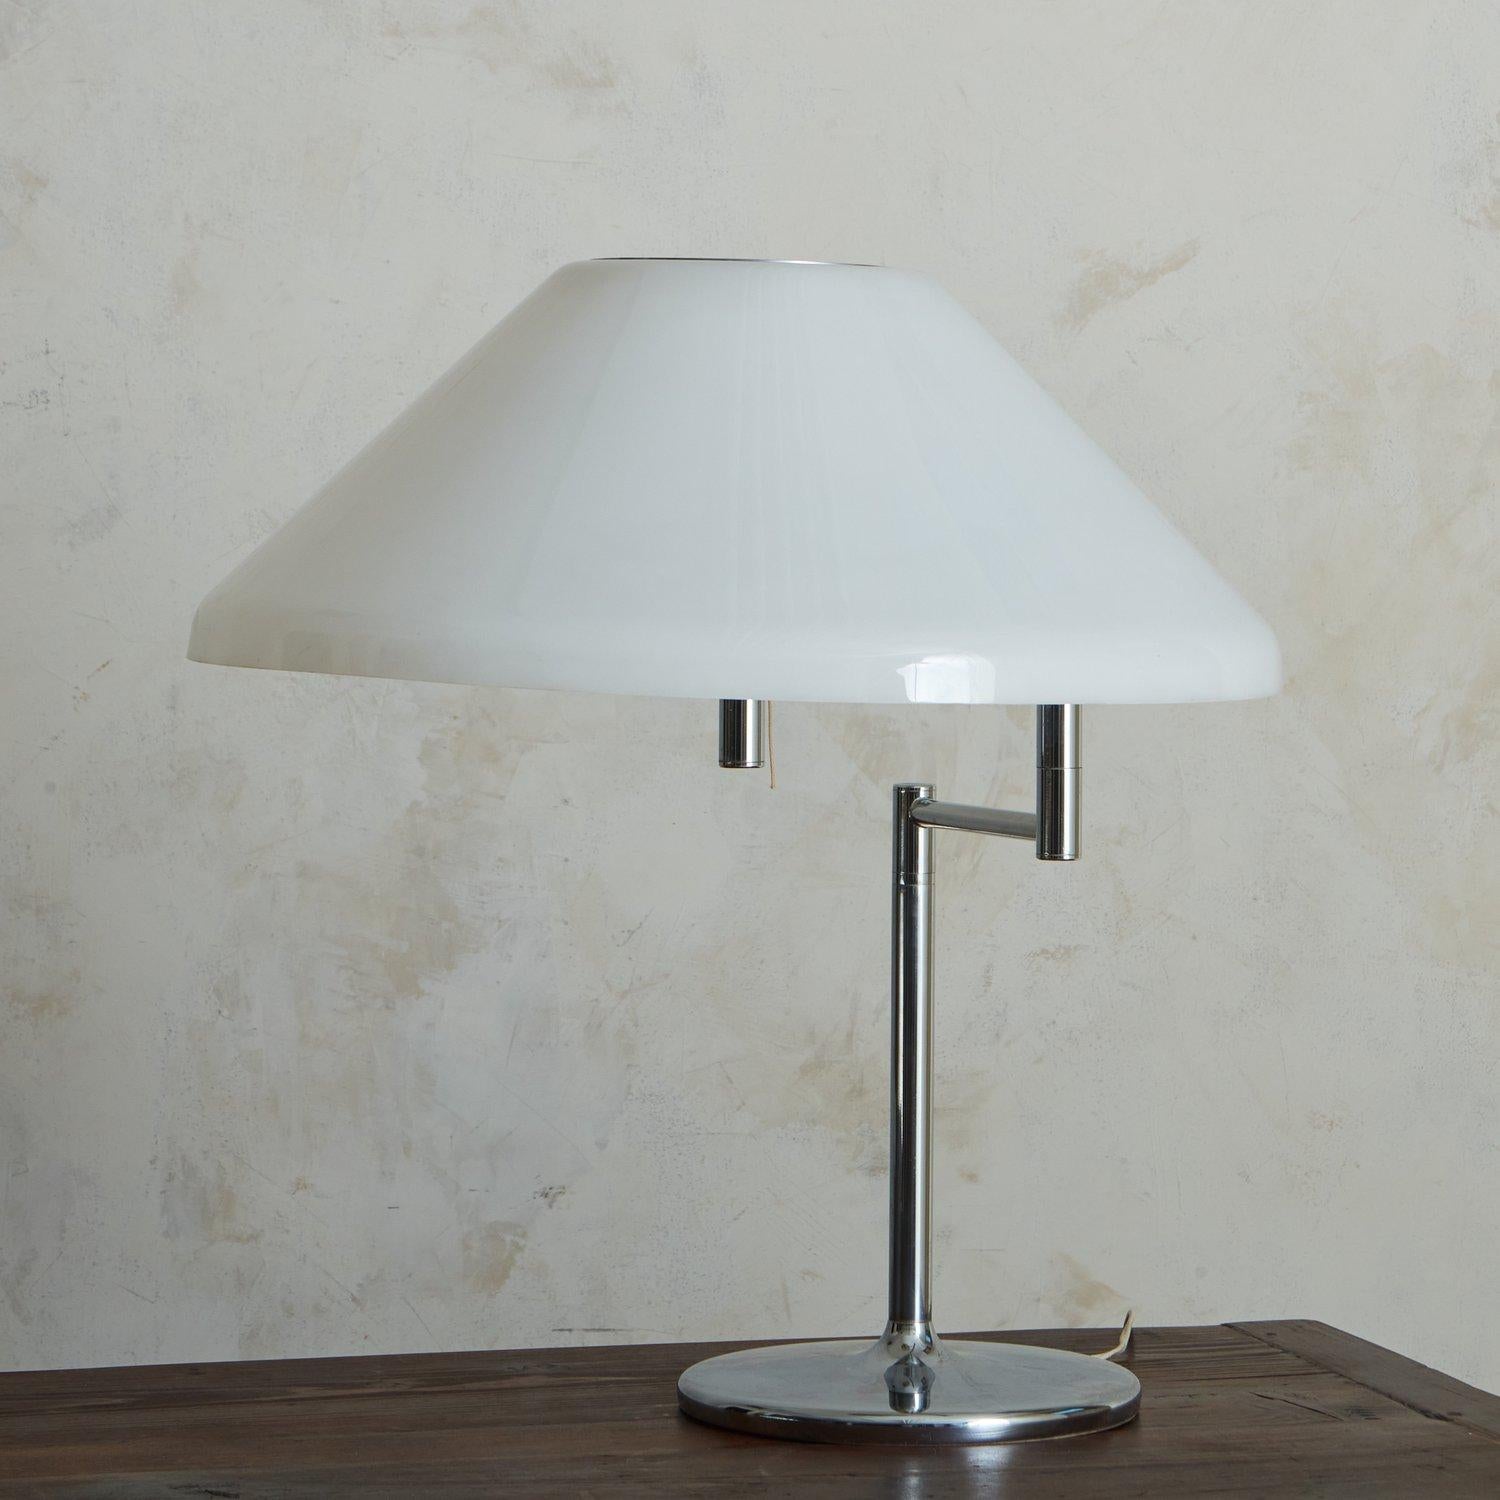 Eine Tischlampe aus den 1960er Jahren, die Swiss Lamps International zugeschrieben wird. Diese Leuchte hat ein verchromtes Gestell mit einem runden Sockel und einem schwenkbaren Arm, der einen weißen Acrylschirm trägt. Unmarkiert. Entstanden in